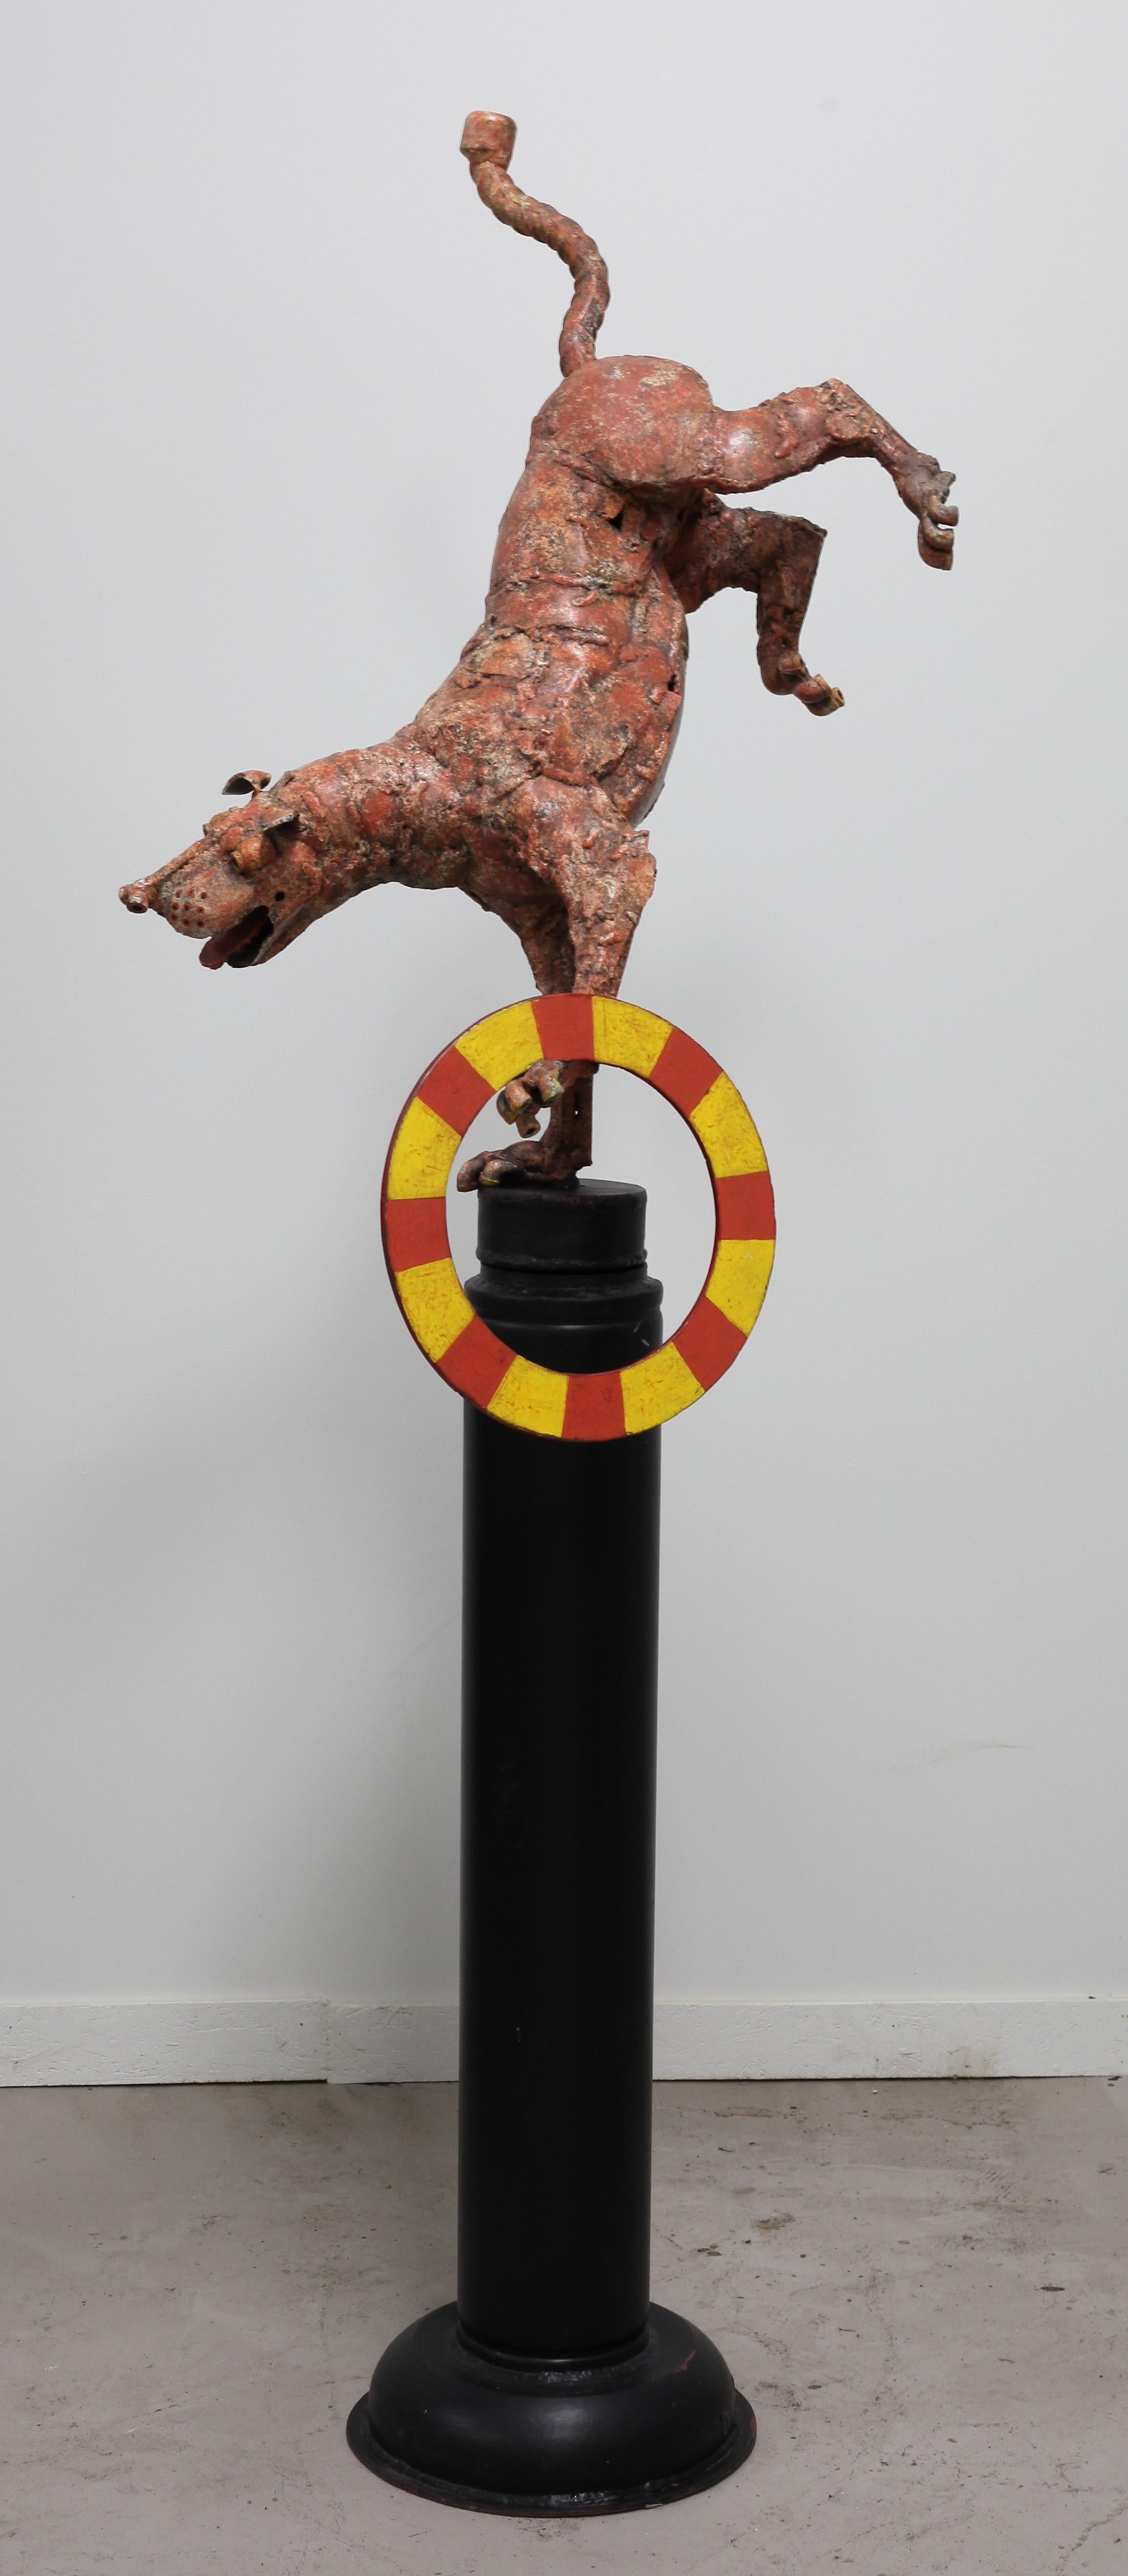 David L. Demings Welt der lebendigen Hundeskulpturen fängt die Liebe des Künstlers zu Hunden ein und präsentiert einen skurrilen Blick auf das Verhalten von Vierbeinern in seiner besten Form.
Seine umfangreiche und einzigartige Sammlung von